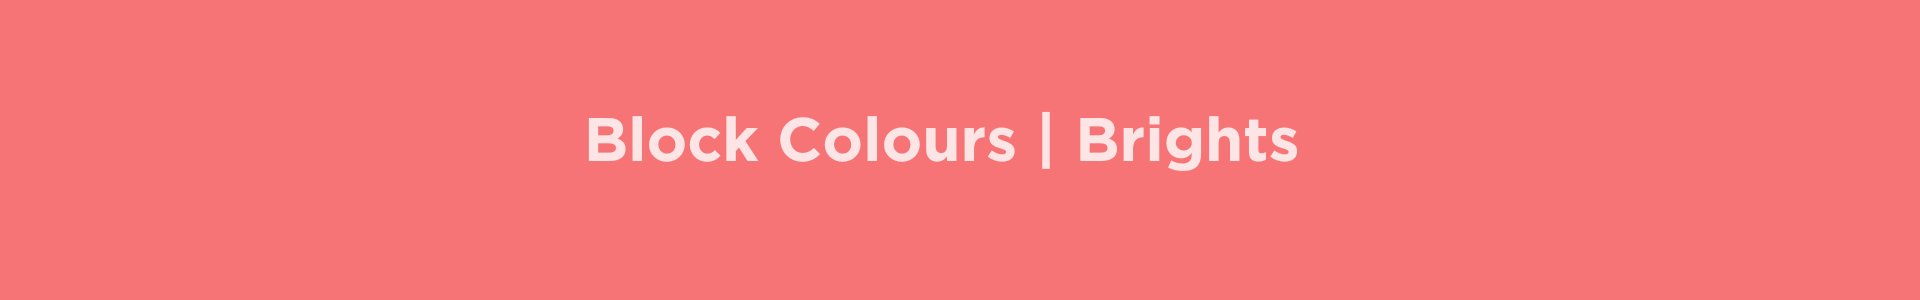 Block Colour | Brights